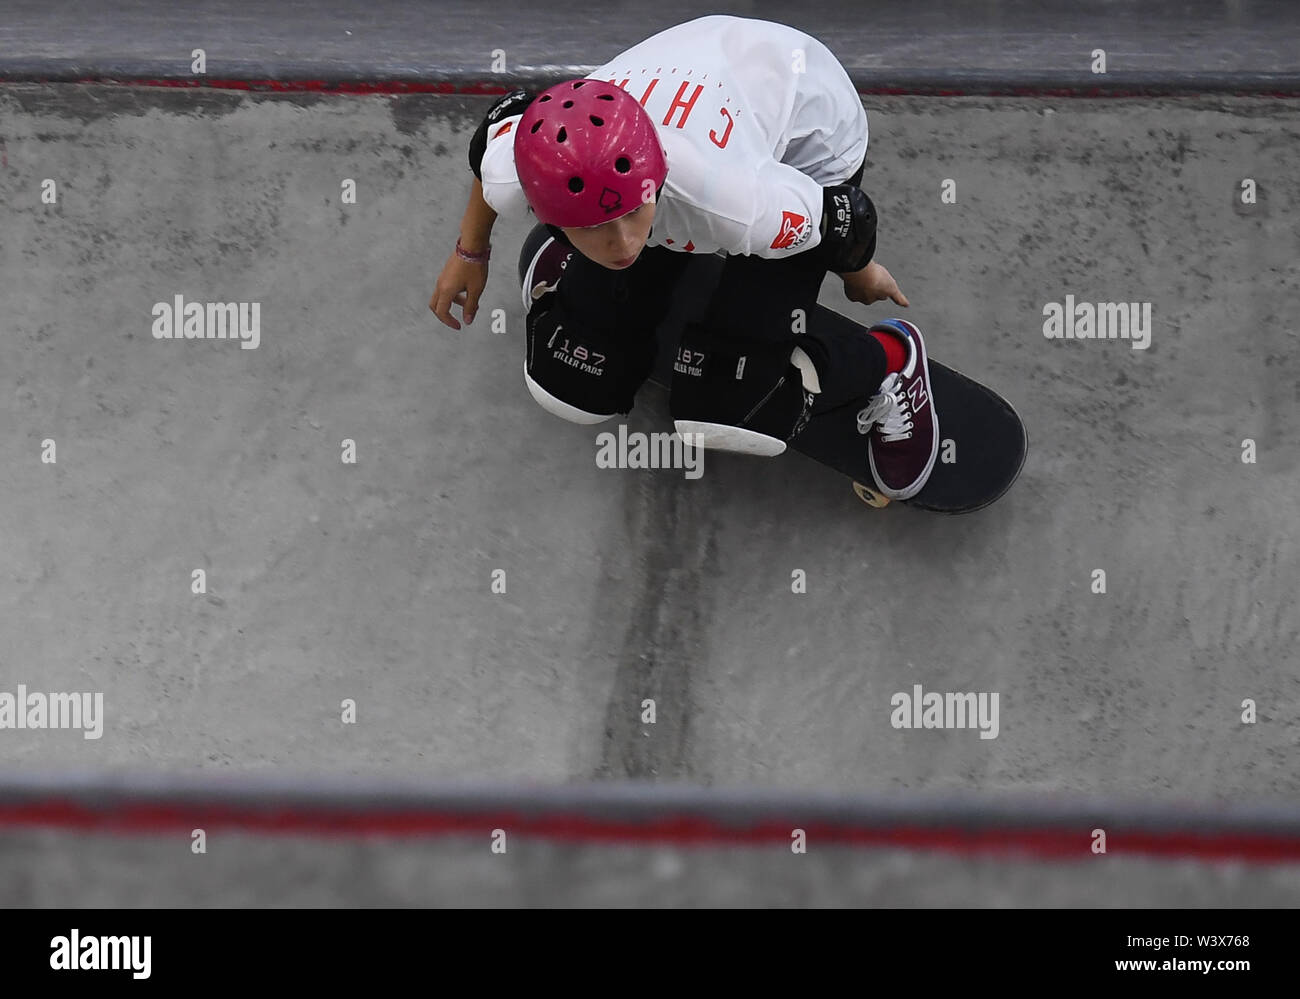 Nanjing. 18th July, 2019. Zhang Xin of China competes during the women quarterfinal at the 2019 International Skateboarding Open in Nanjing, east China's Jiangsu Province on July 18, 2019. Credit: Ji Chunpeng/Xinhua/Alamy Live News Stock Photo